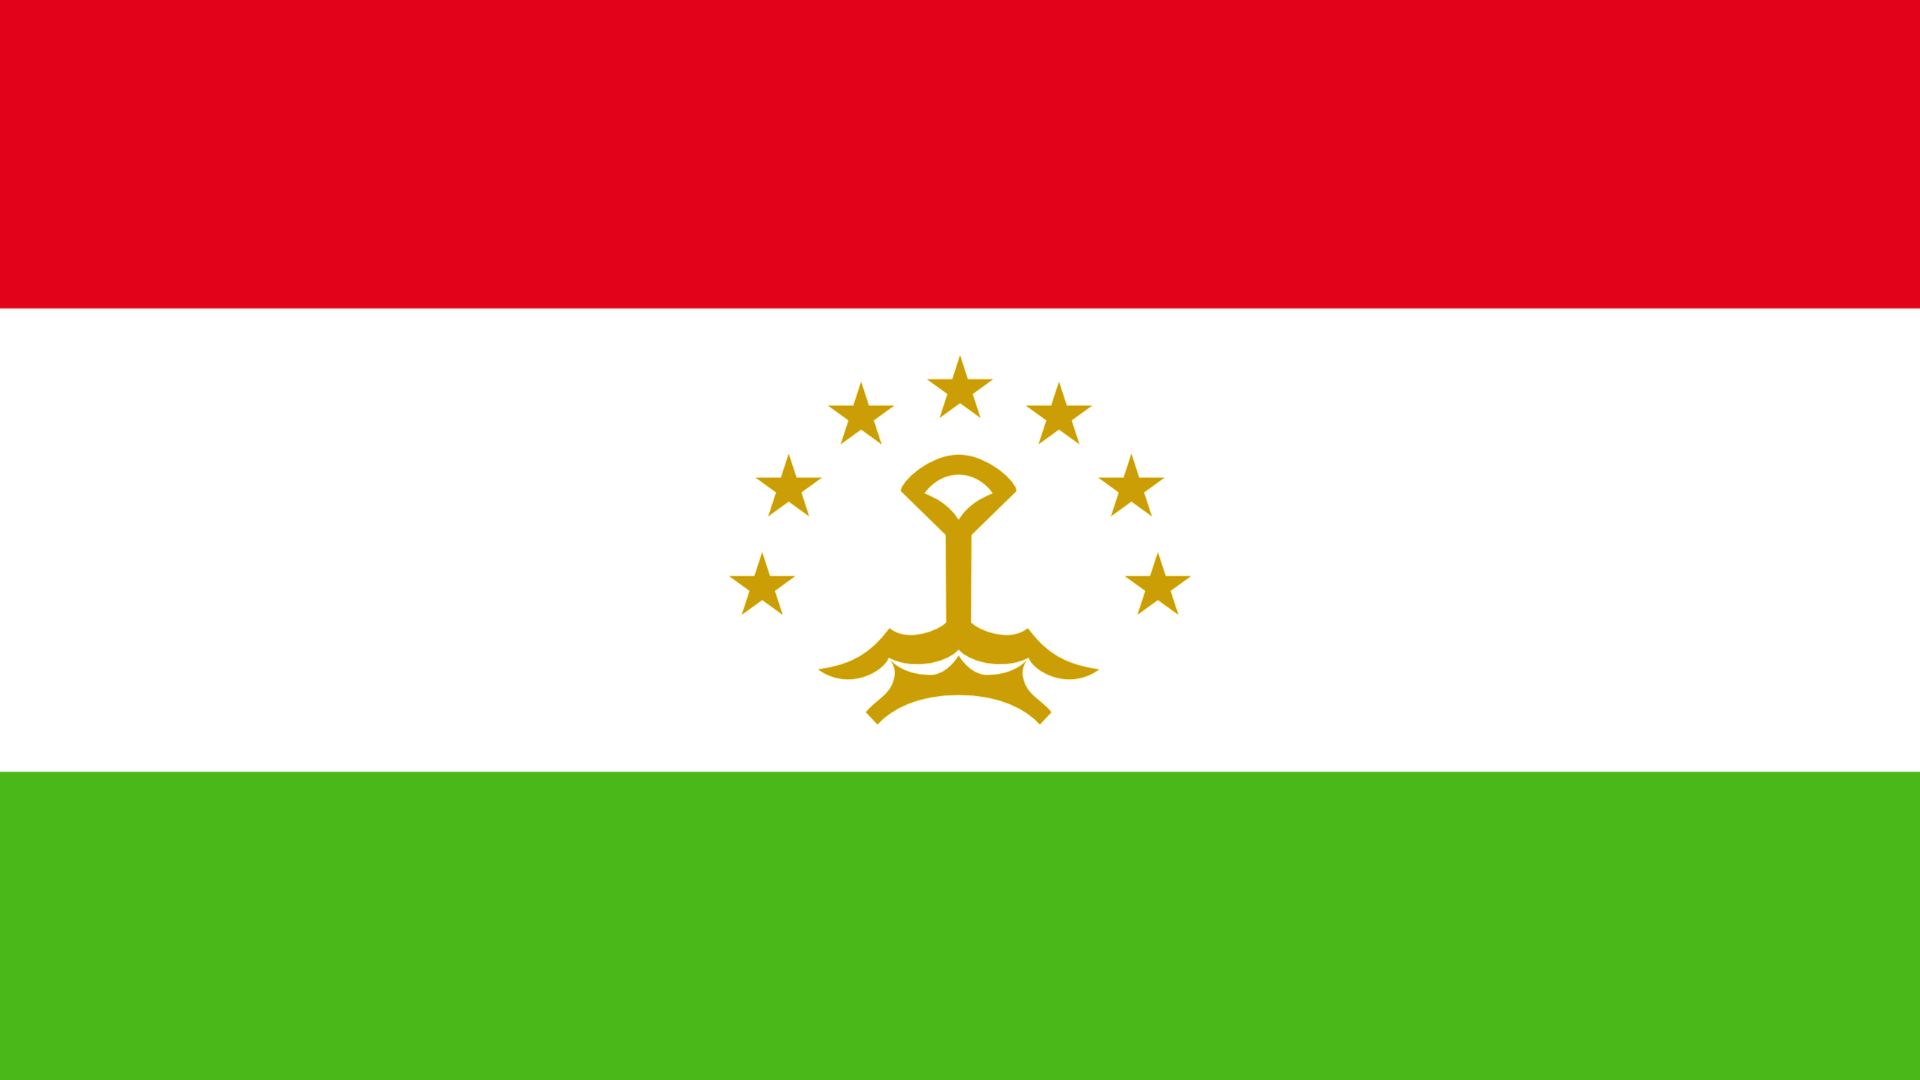 A bandeira do Tajiquistão é composta por três faixas horizontais nas cores vermelho, branco e verde. No centro da faixa branca está o emblema dourado que consiste em uma coroa rodeada por sete estrelas de cinco pontas formando um semicírculo.